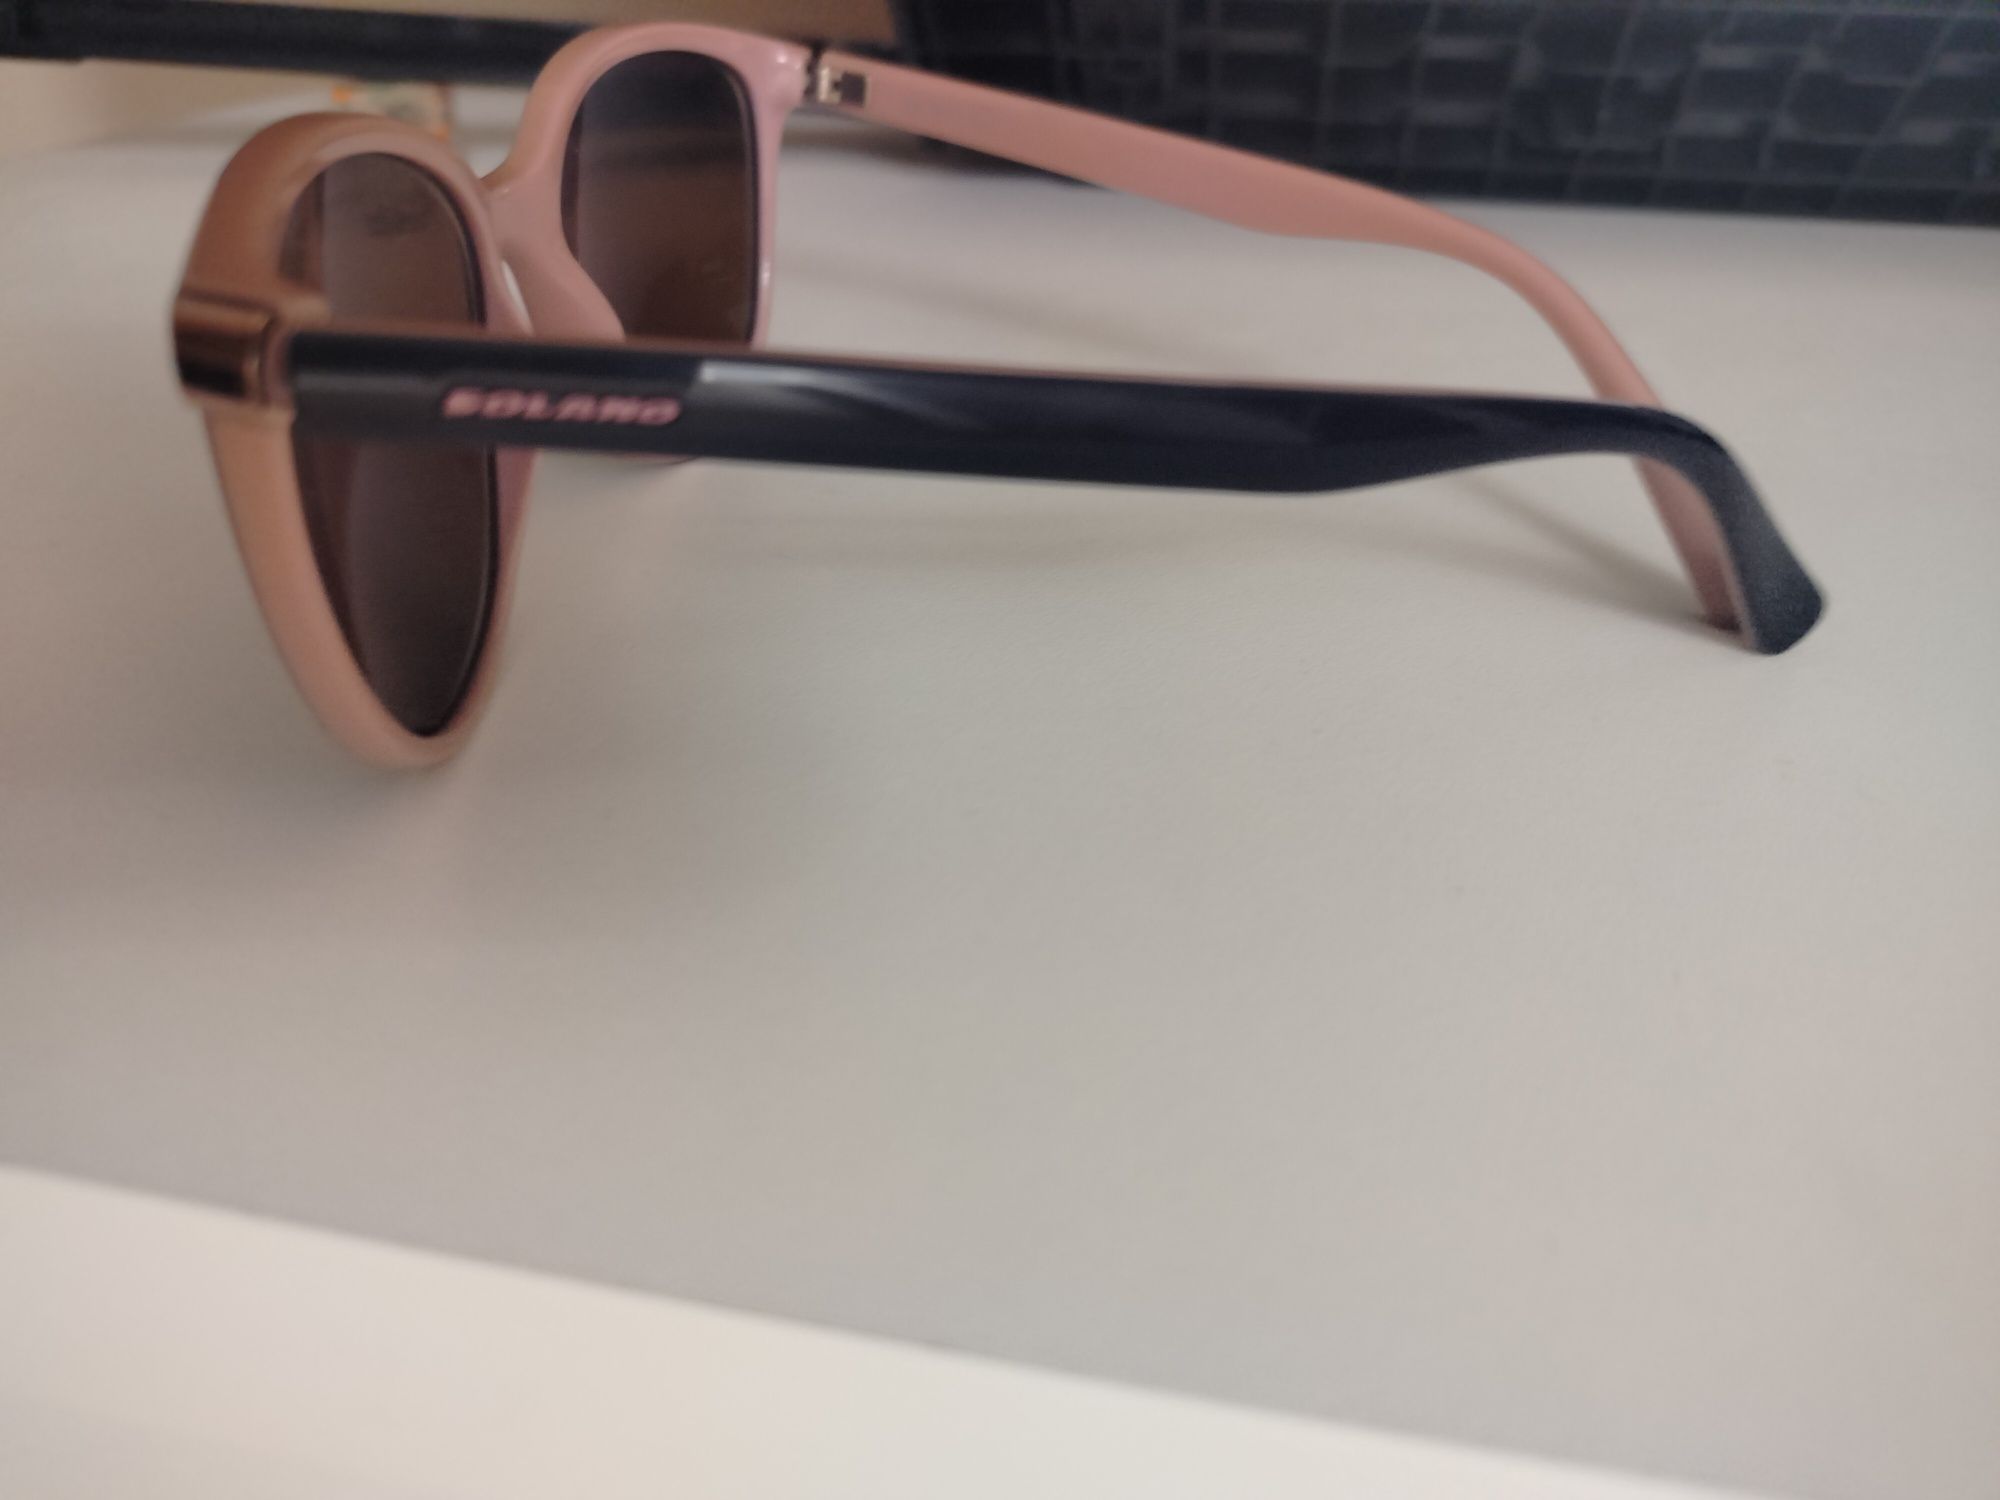 Okulary przeciwsłoneczne niebieskie lustrzane Solano